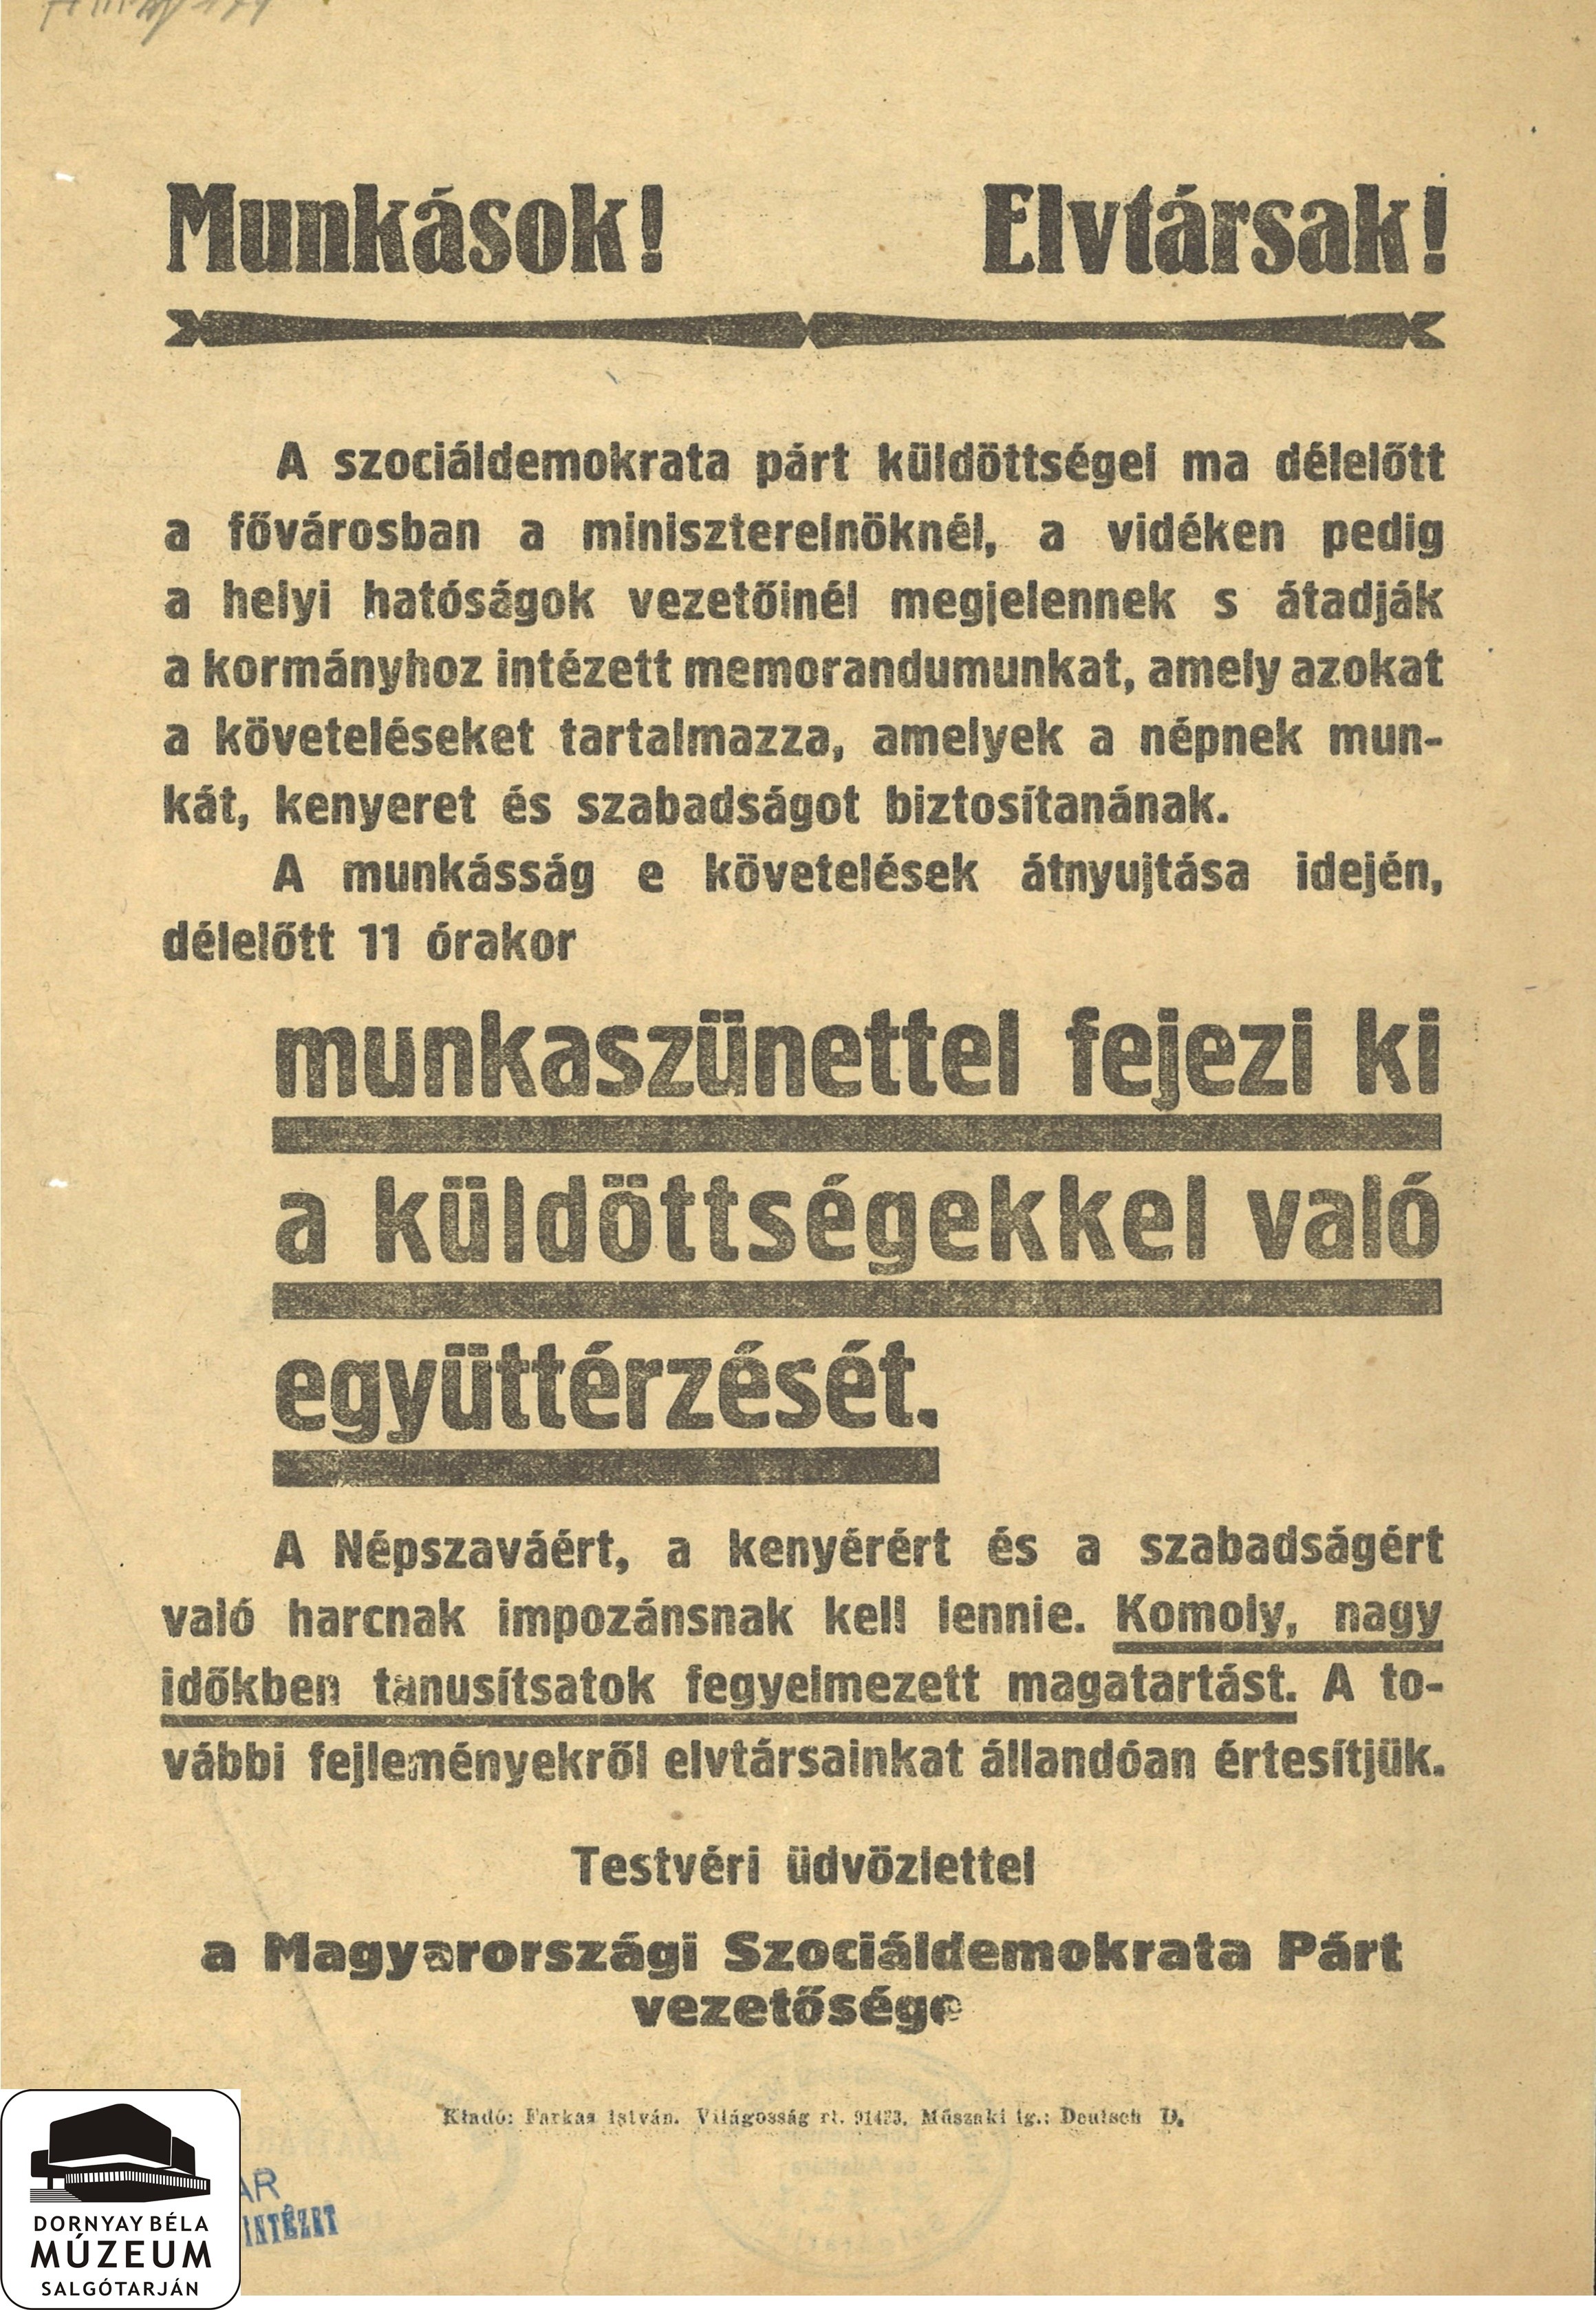 A Szociáldemokrata Párt vezetőségének felhívása munkaszünetre (Dornyay Béla Múzeum, Salgótarján CC BY-NC-SA)